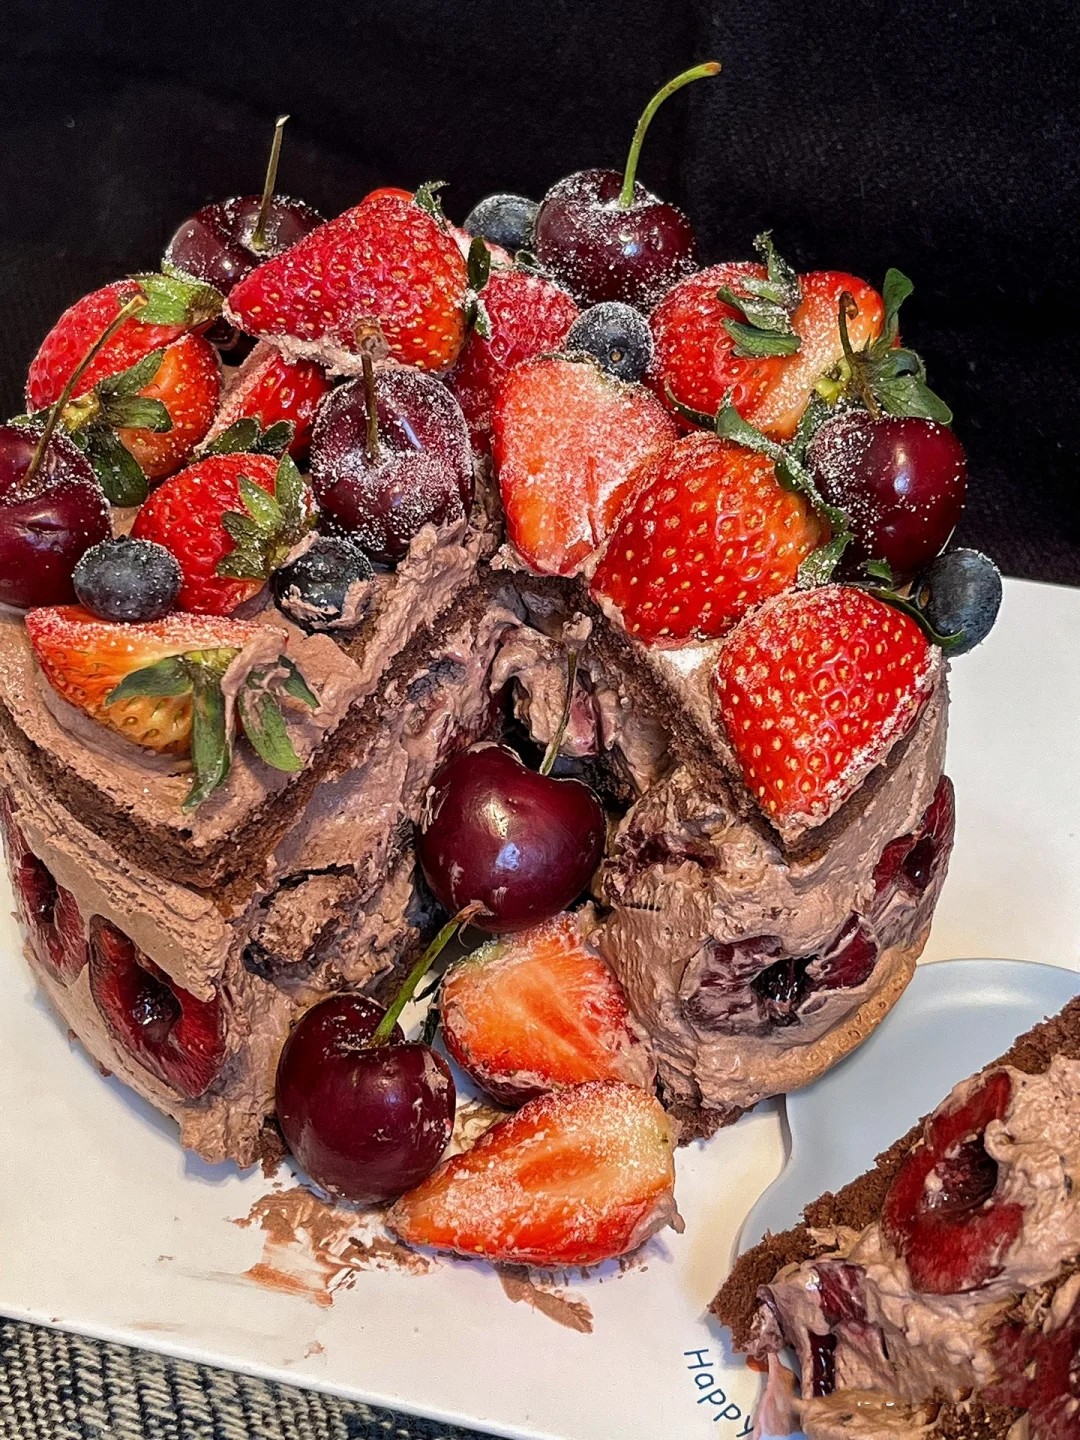 网红车厘子蛋糕巧克力水果生日蛋糕创意定制女友北京同城配送全国